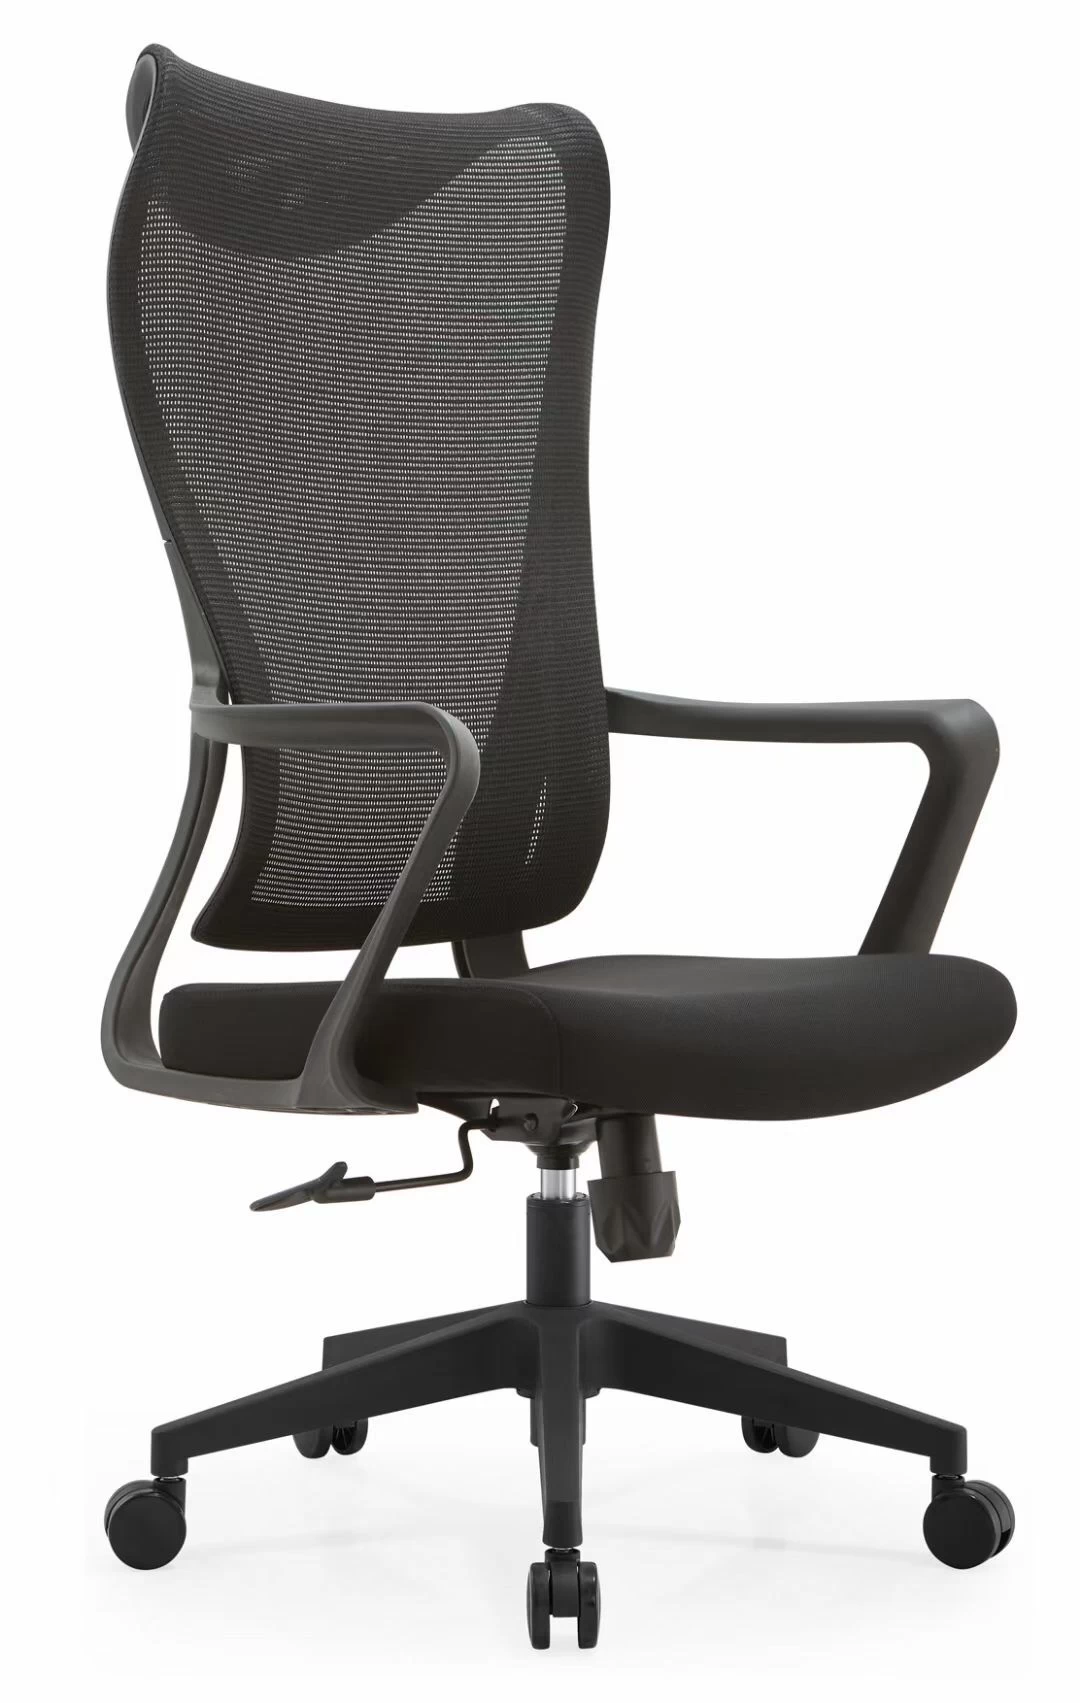 Newcity N1606优雅精致网椅圆润线条和中性风格彰显更丰富空间格调办公椅中国制造商